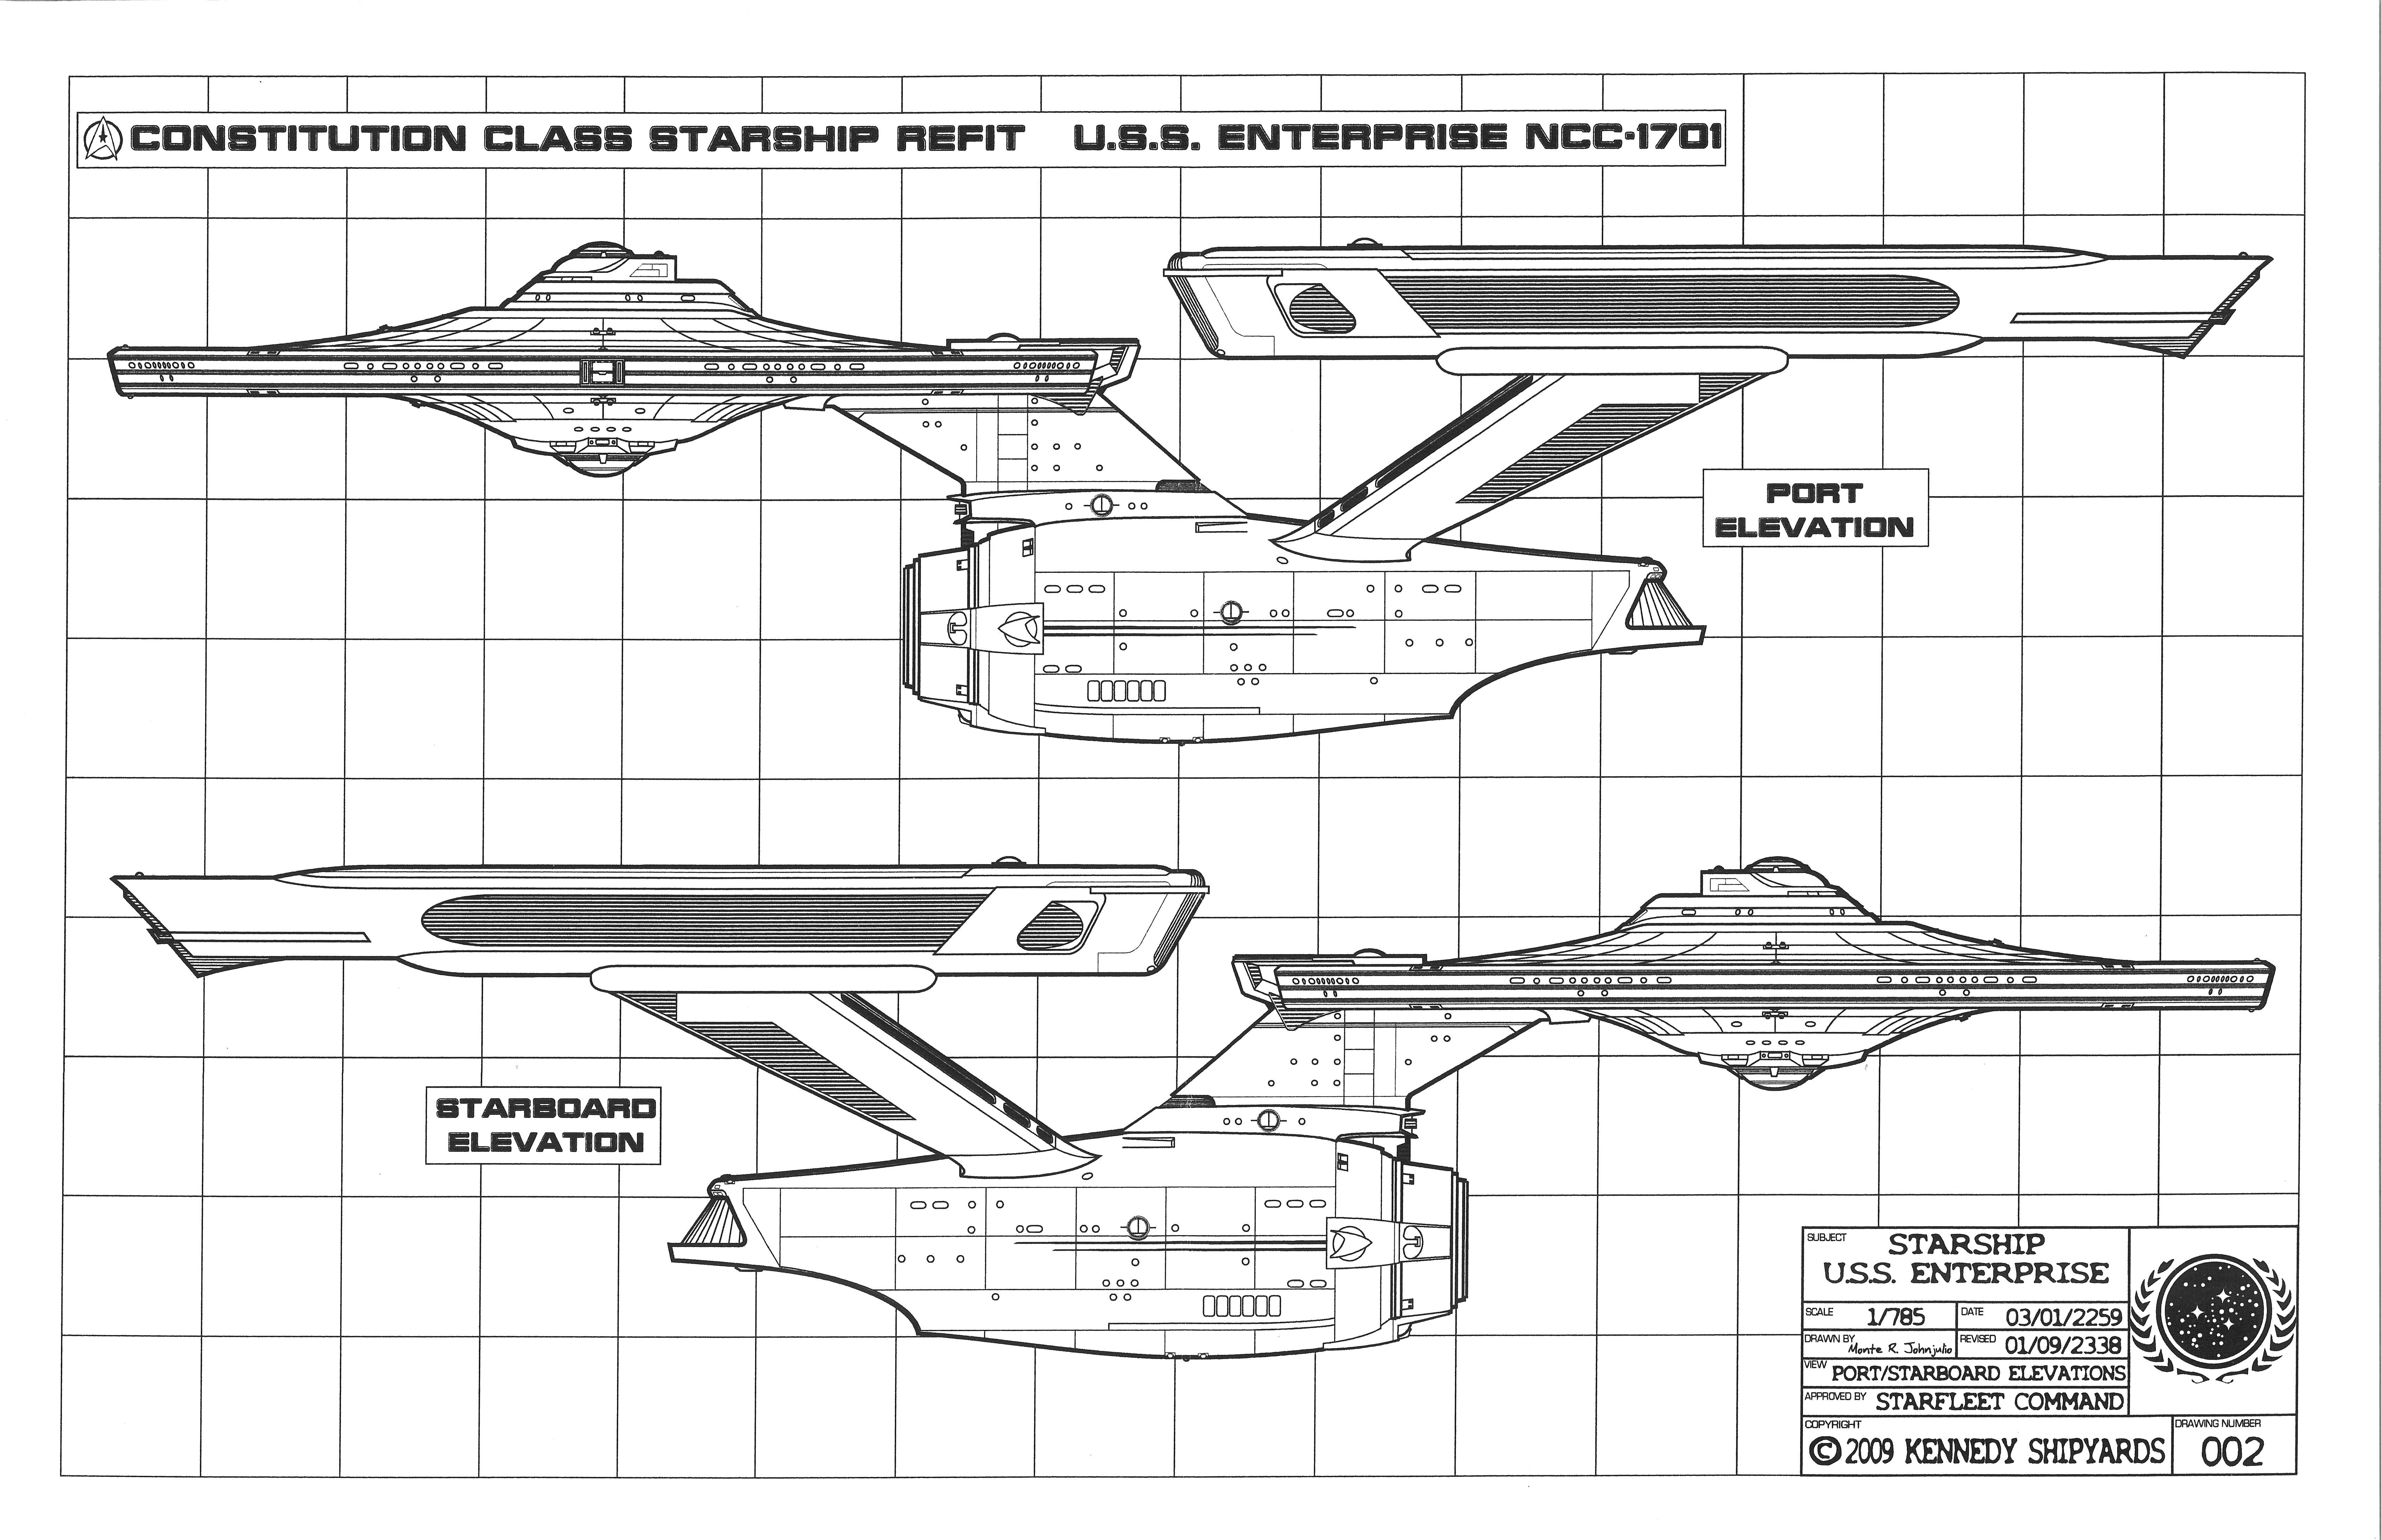 Enterprise Ncc 1701 Schematics